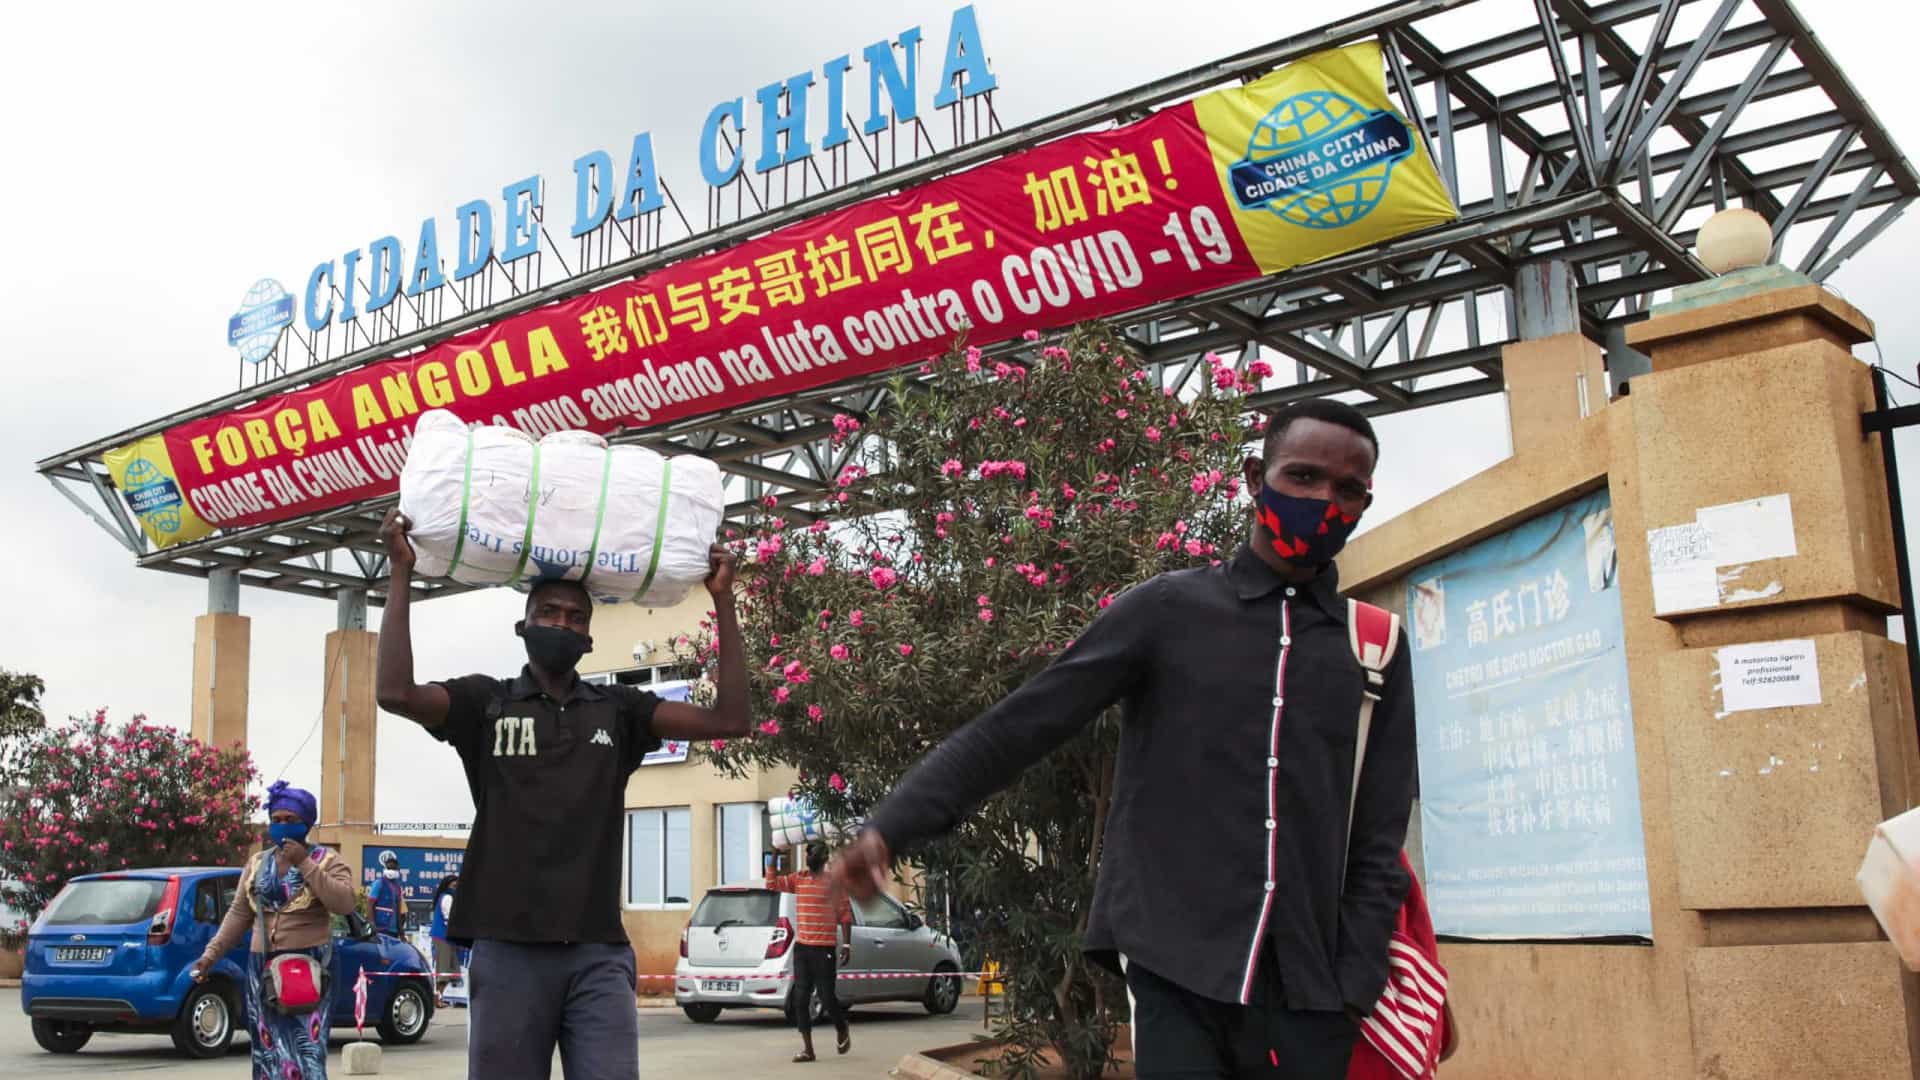 Angola assina memorando com parque industrial China-África